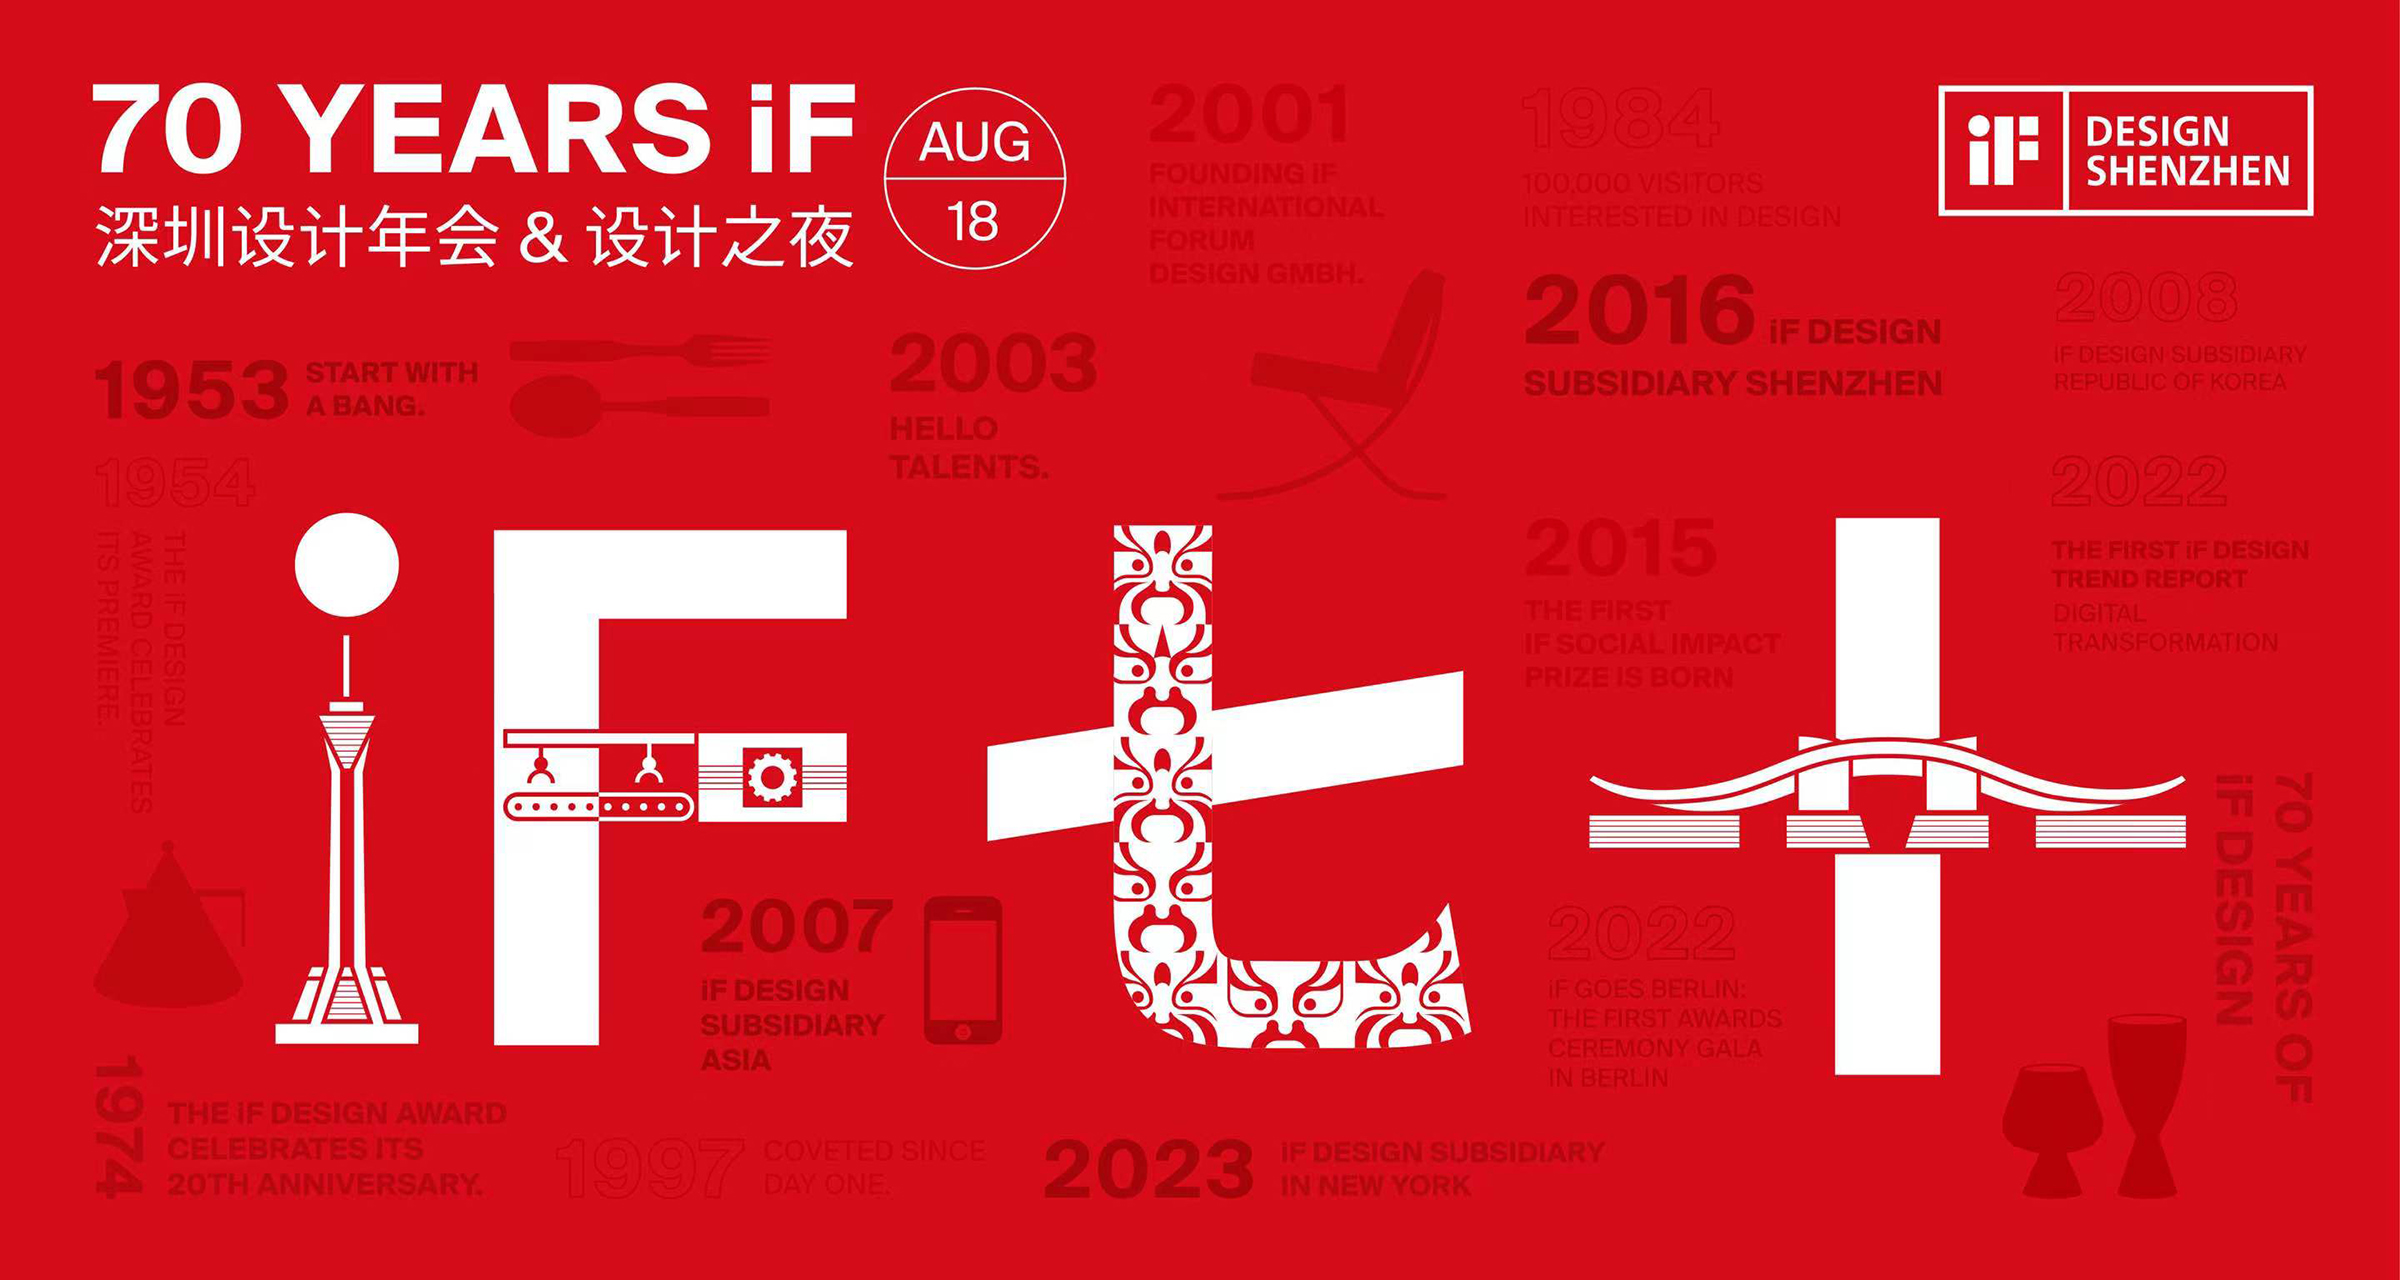 荣誉 | 沃利创意受邀参加“70 YEARS iF 深圳设计年会&设计之夜”活动